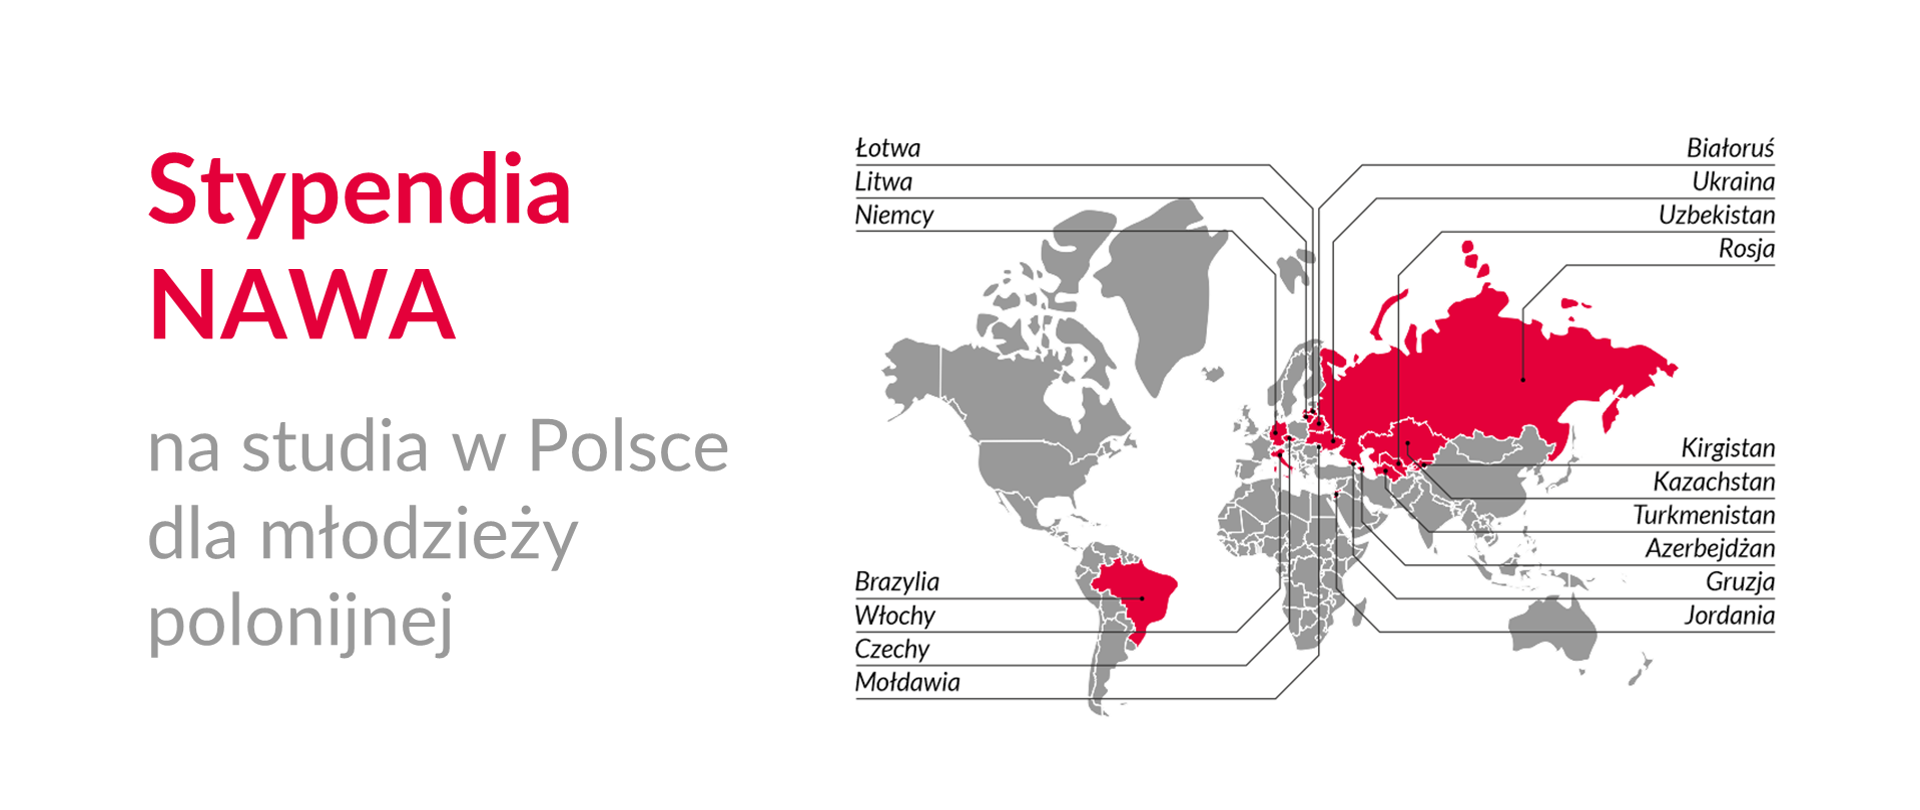 Grafika z mapą świata i tekstem: "Stypendia NAWA na studia w Polsce dla młodzieży polonijnej"